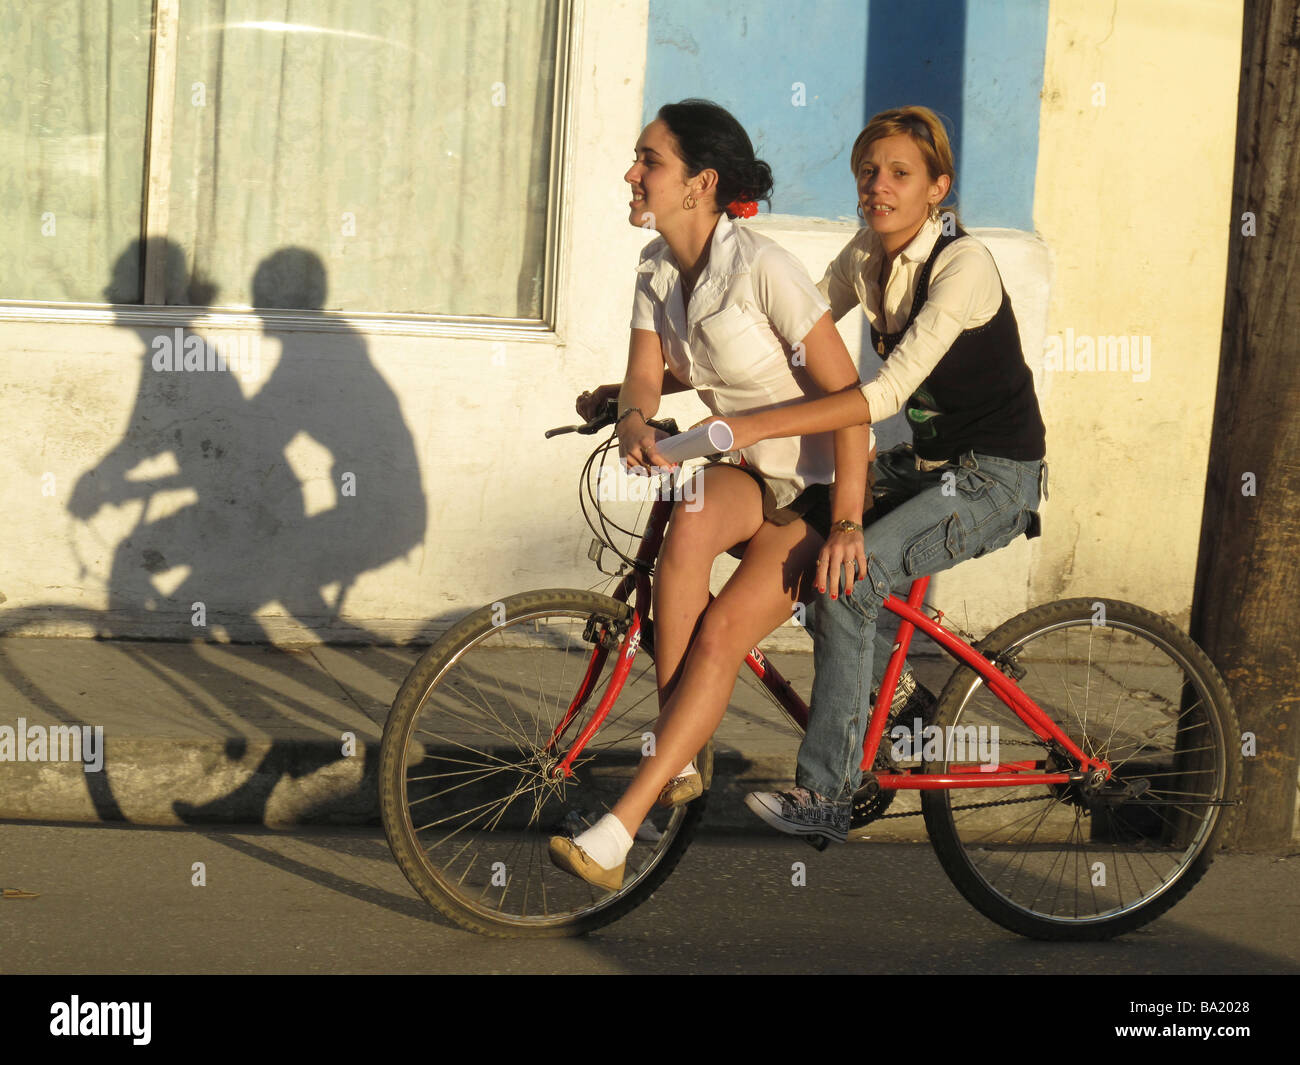 Zwei Mädchen im Teenageralter auf einem roten Fahrrad Rad fahren durch die Stadt am späten Nachmittag in Sancti Spíritus, Kuba Stockfoto